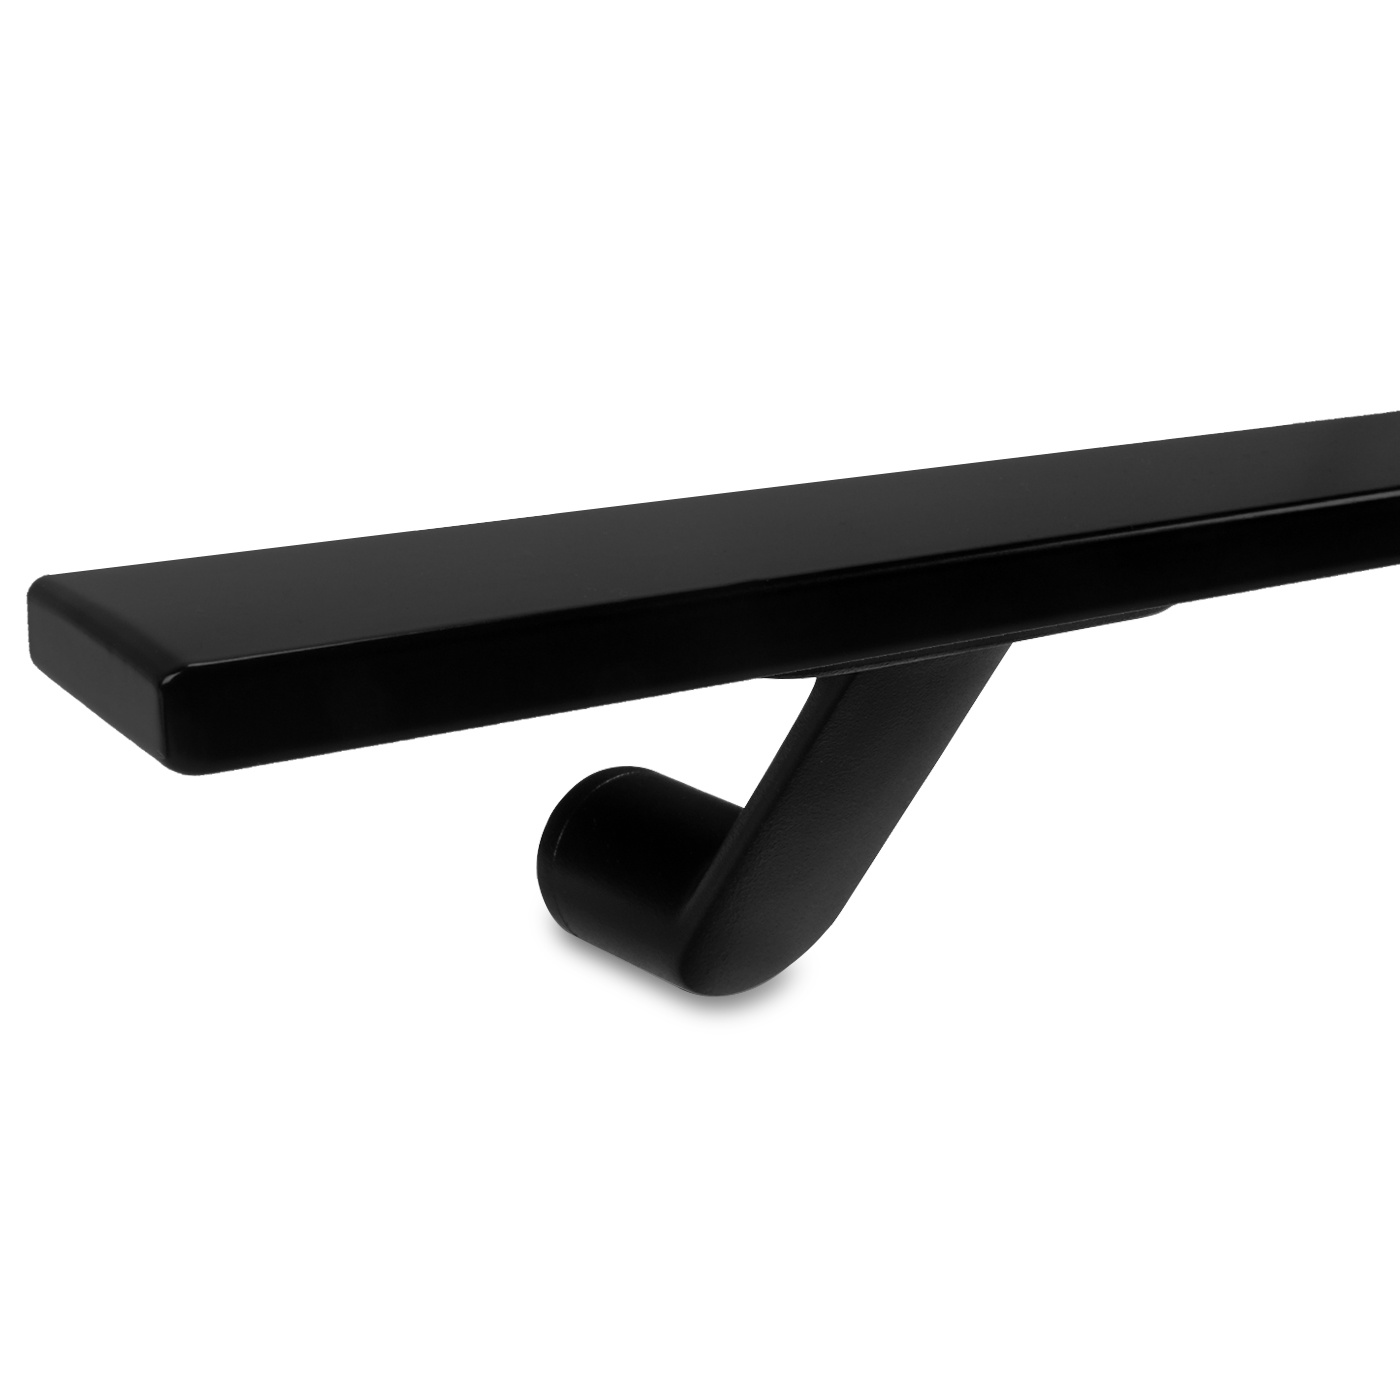  Handlauf schwarz beschichtet viereckig 40x10 Modell 7 - Rechteckige Treppengeländer - Treppenhandlauf mit schwarzer Pulverbeschichtung RAL 9005